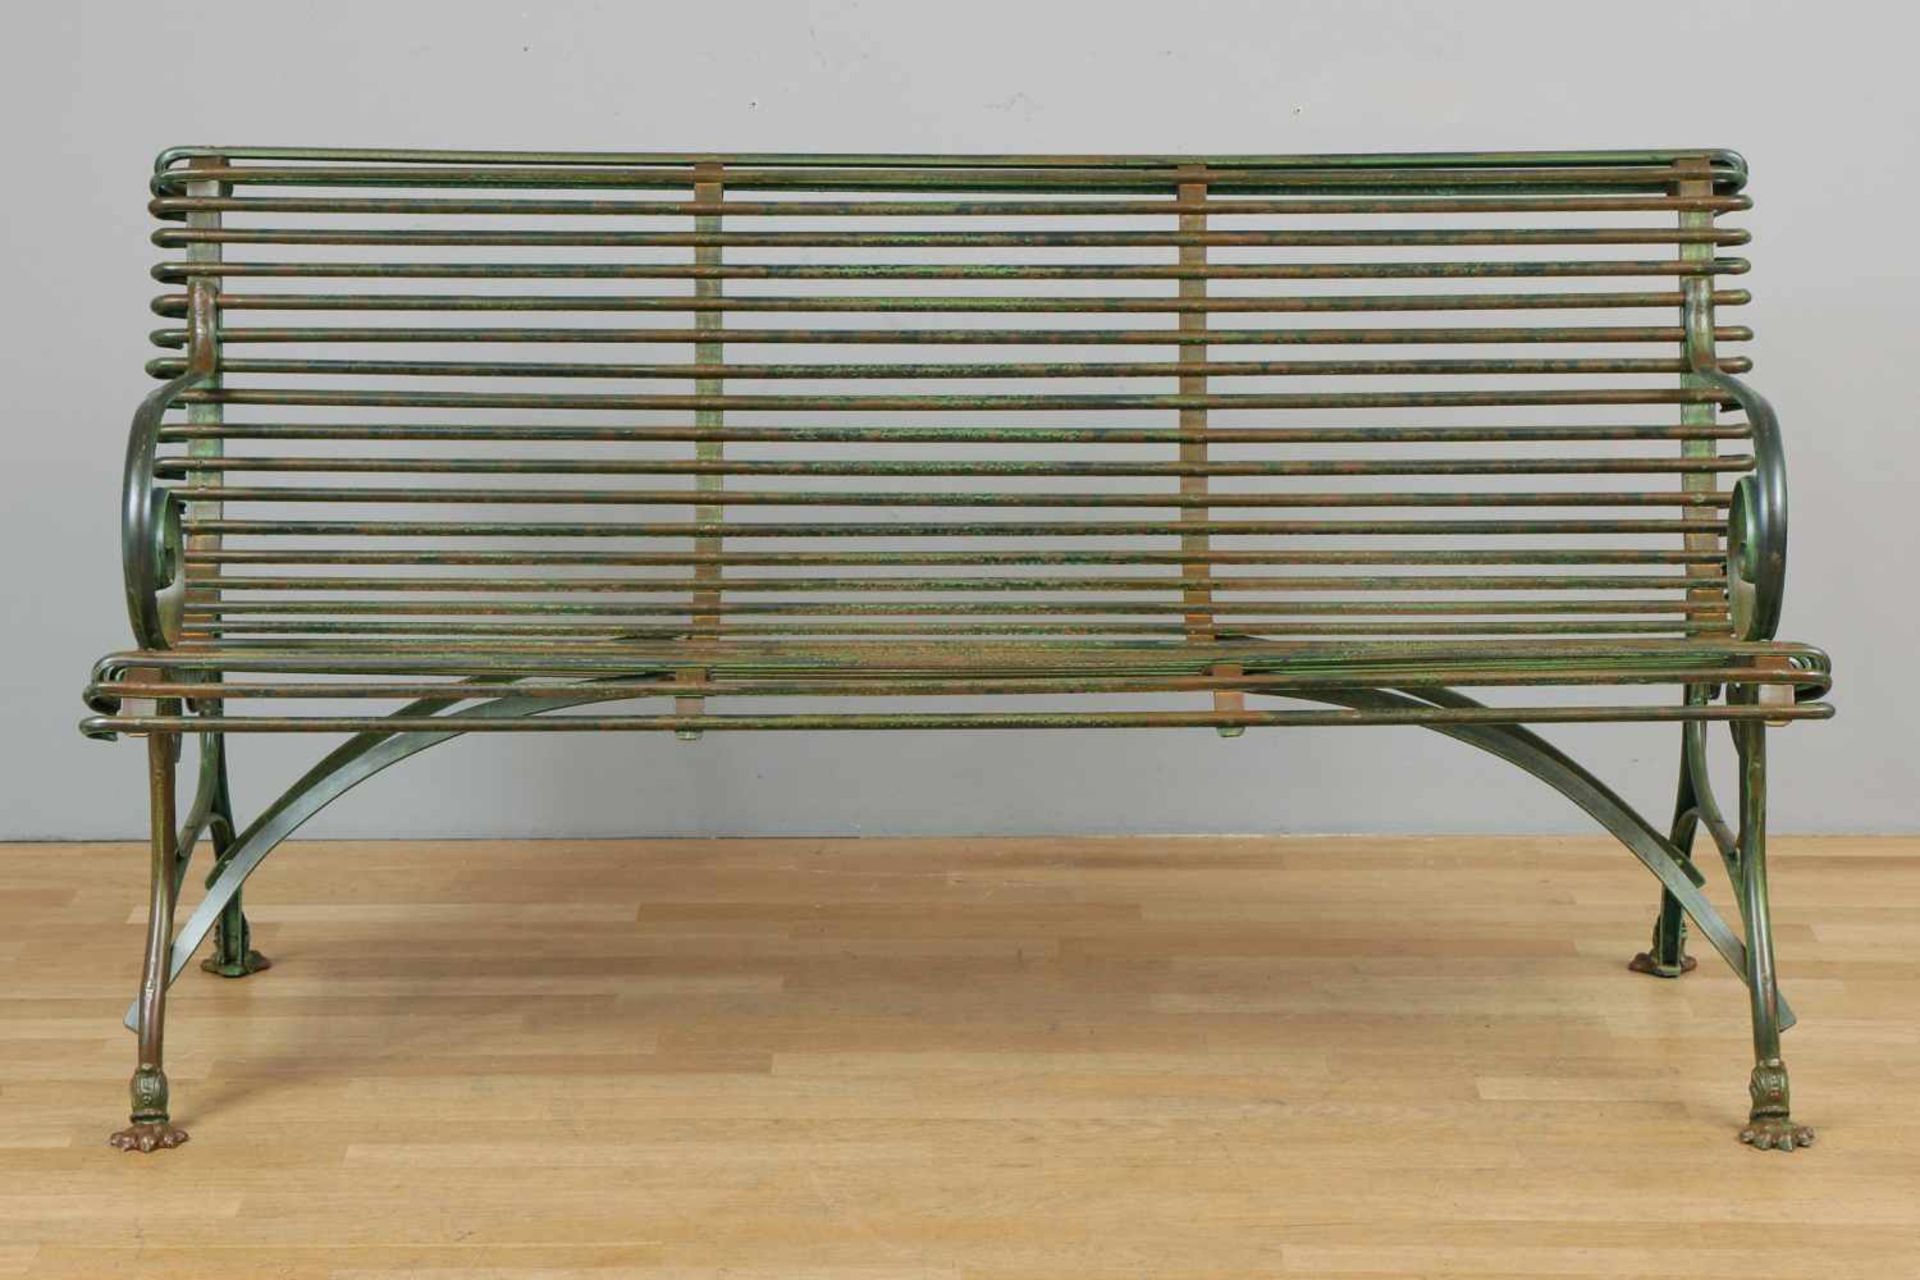 Französische Park-/Gartenbank Eisen, grün patiniert, verstrebte Sitzfläche, 2 seitliche Armlehnen in - Image 2 of 2